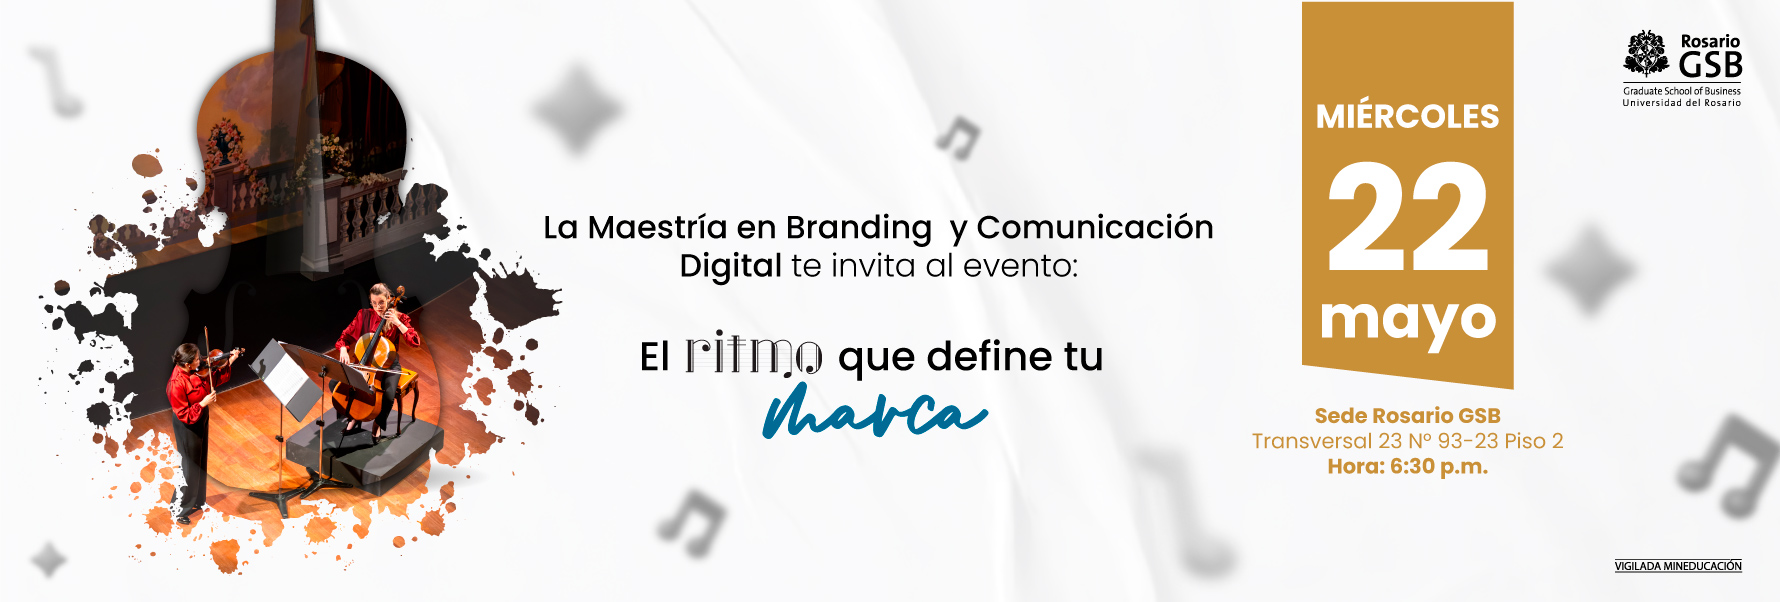 Lanzamiento Maestría en Branding y Comunicación Digital  mobile